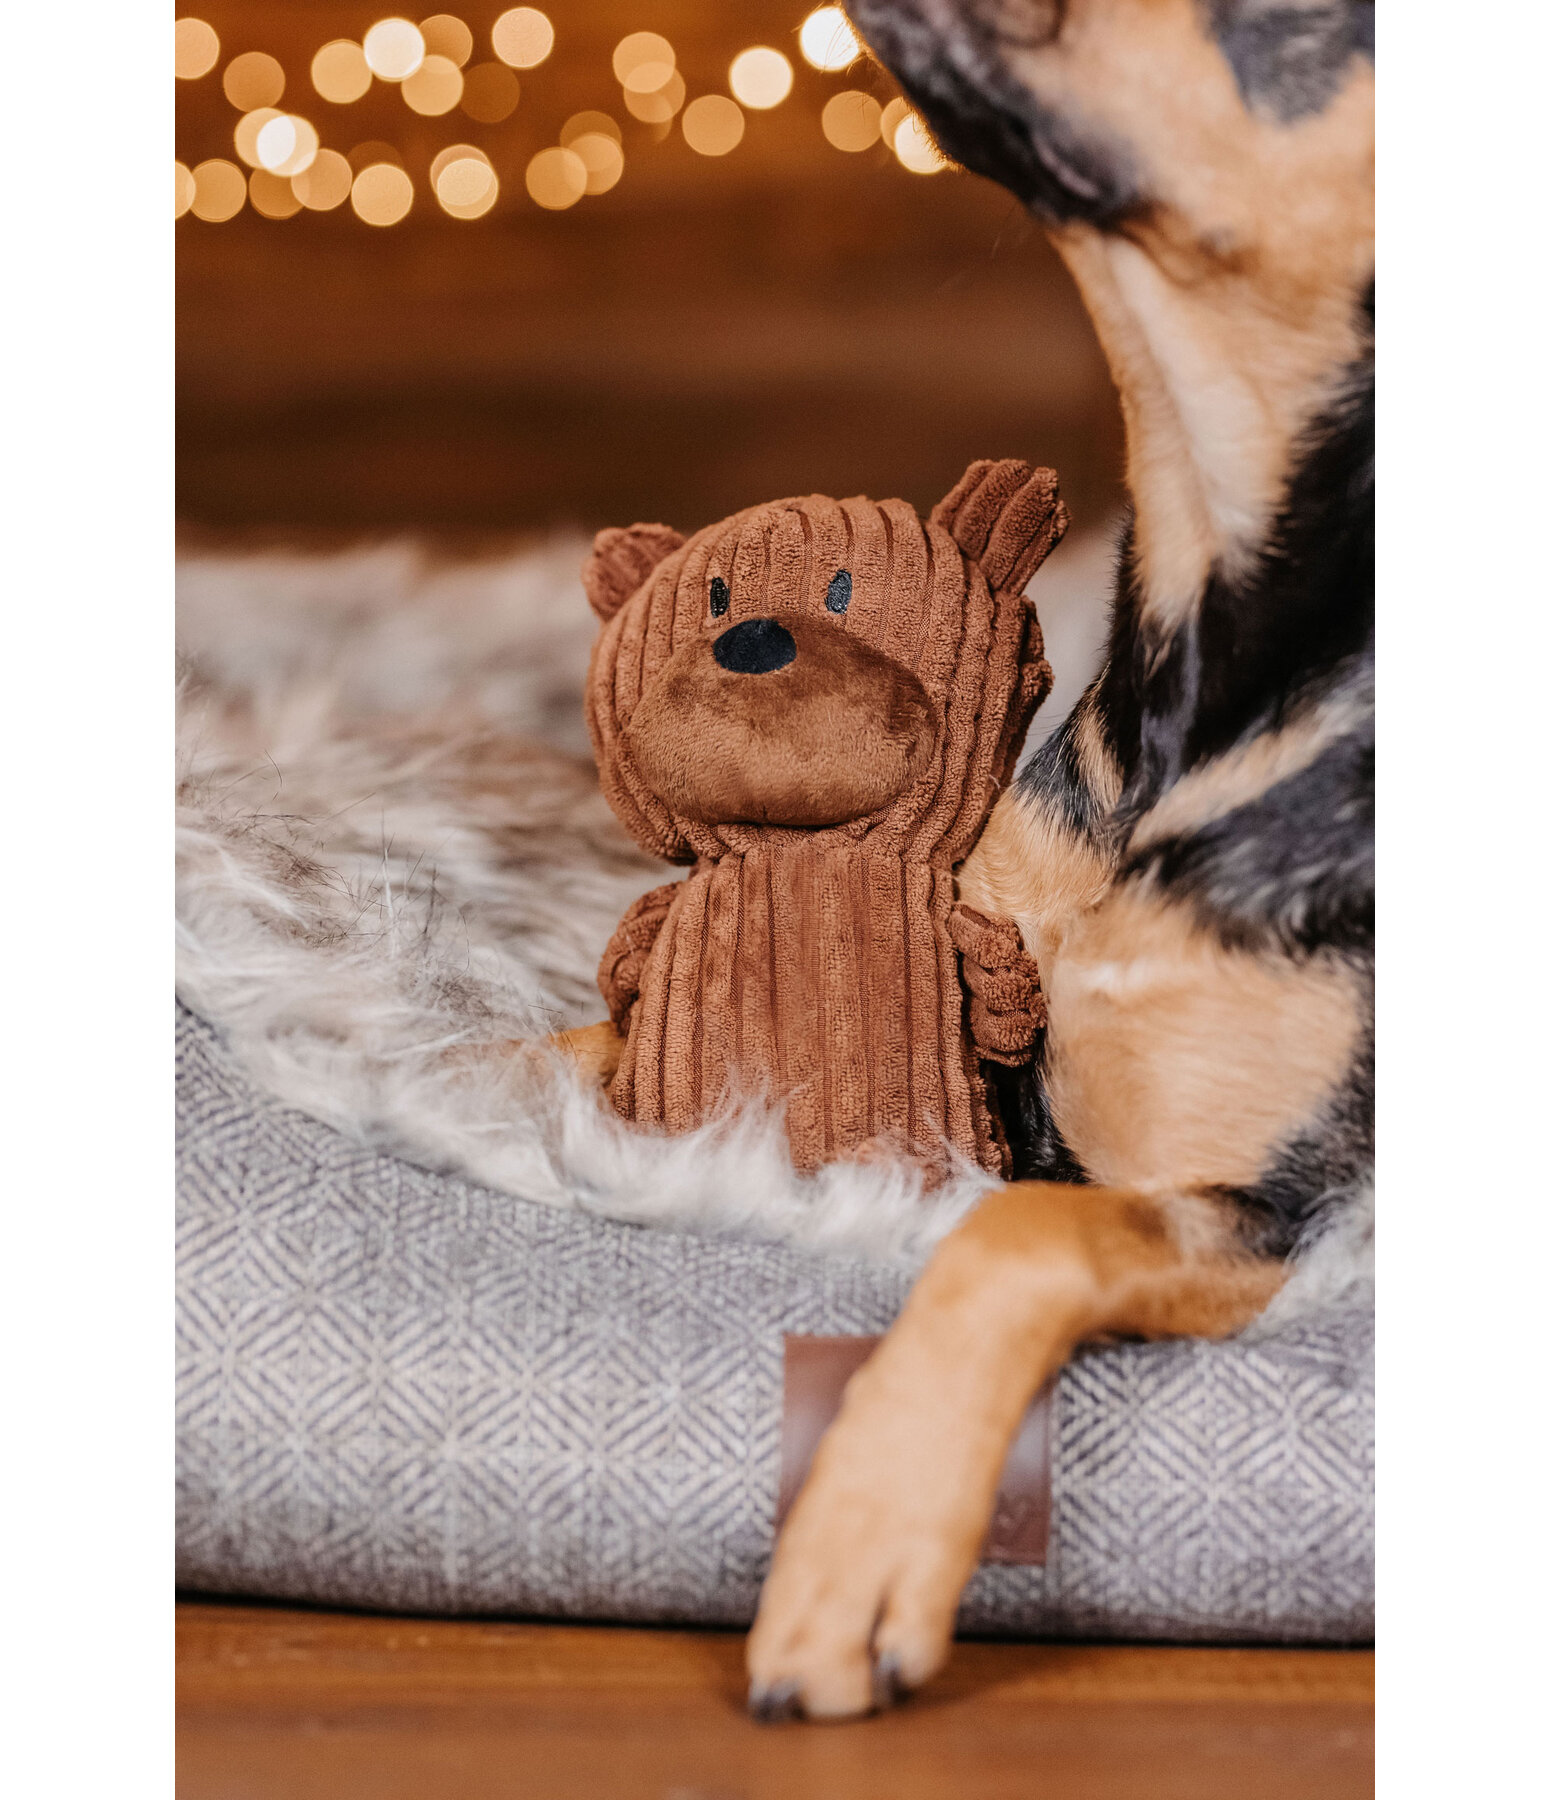 Cuddly Bear Dog Toy Bruno